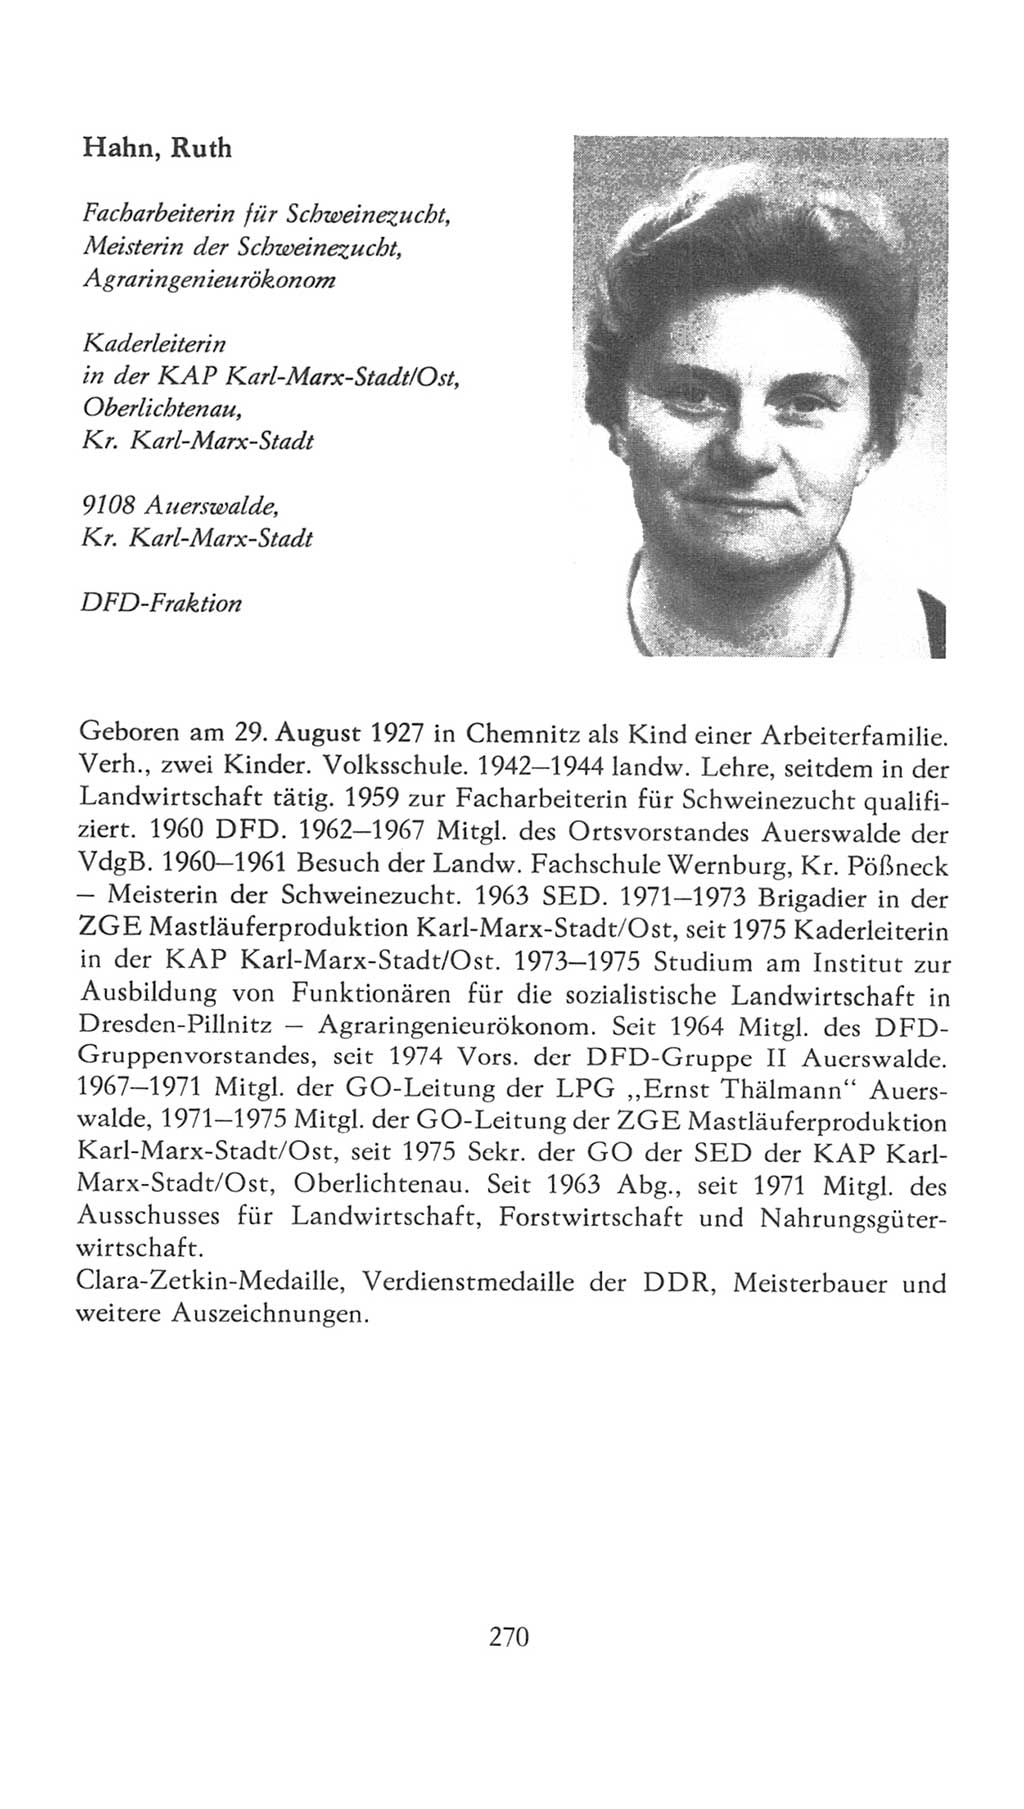 Volkskammer (VK) der Deutschen Demokratischen Republik (DDR), 7. Wahlperiode 1976-1981, Seite 270 (VK. DDR 7. WP. 1976-1981, S. 270)